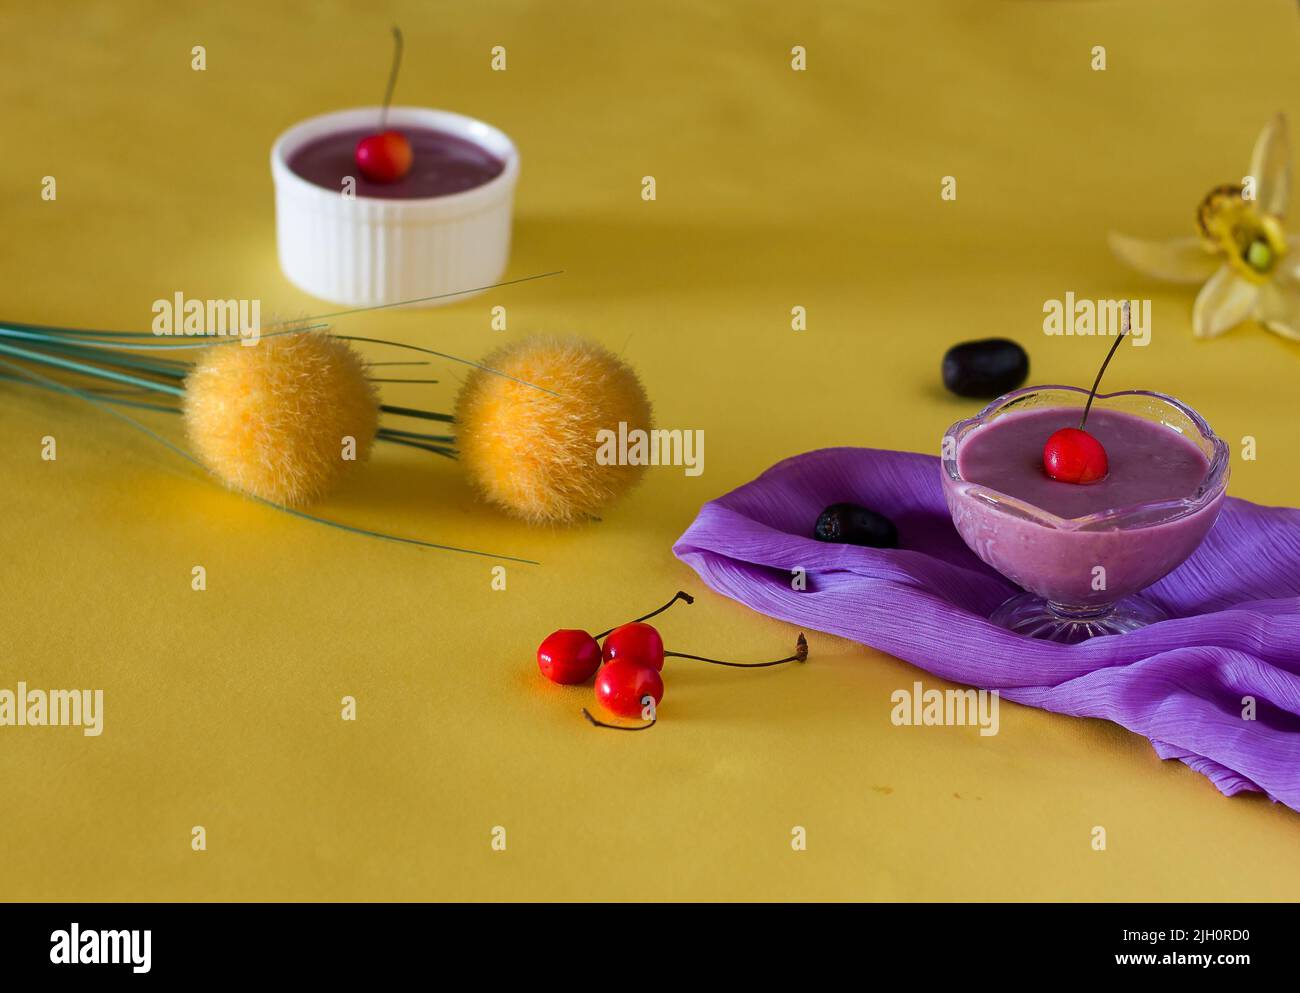 Jamun Mousse, Malabar Plum mousse aux fruits avec garniture de cerise. Dessert frais fait maison à partir de Jamun. Pudding d'été sur fond jaune foncé, en gros plan. Banque D'Images